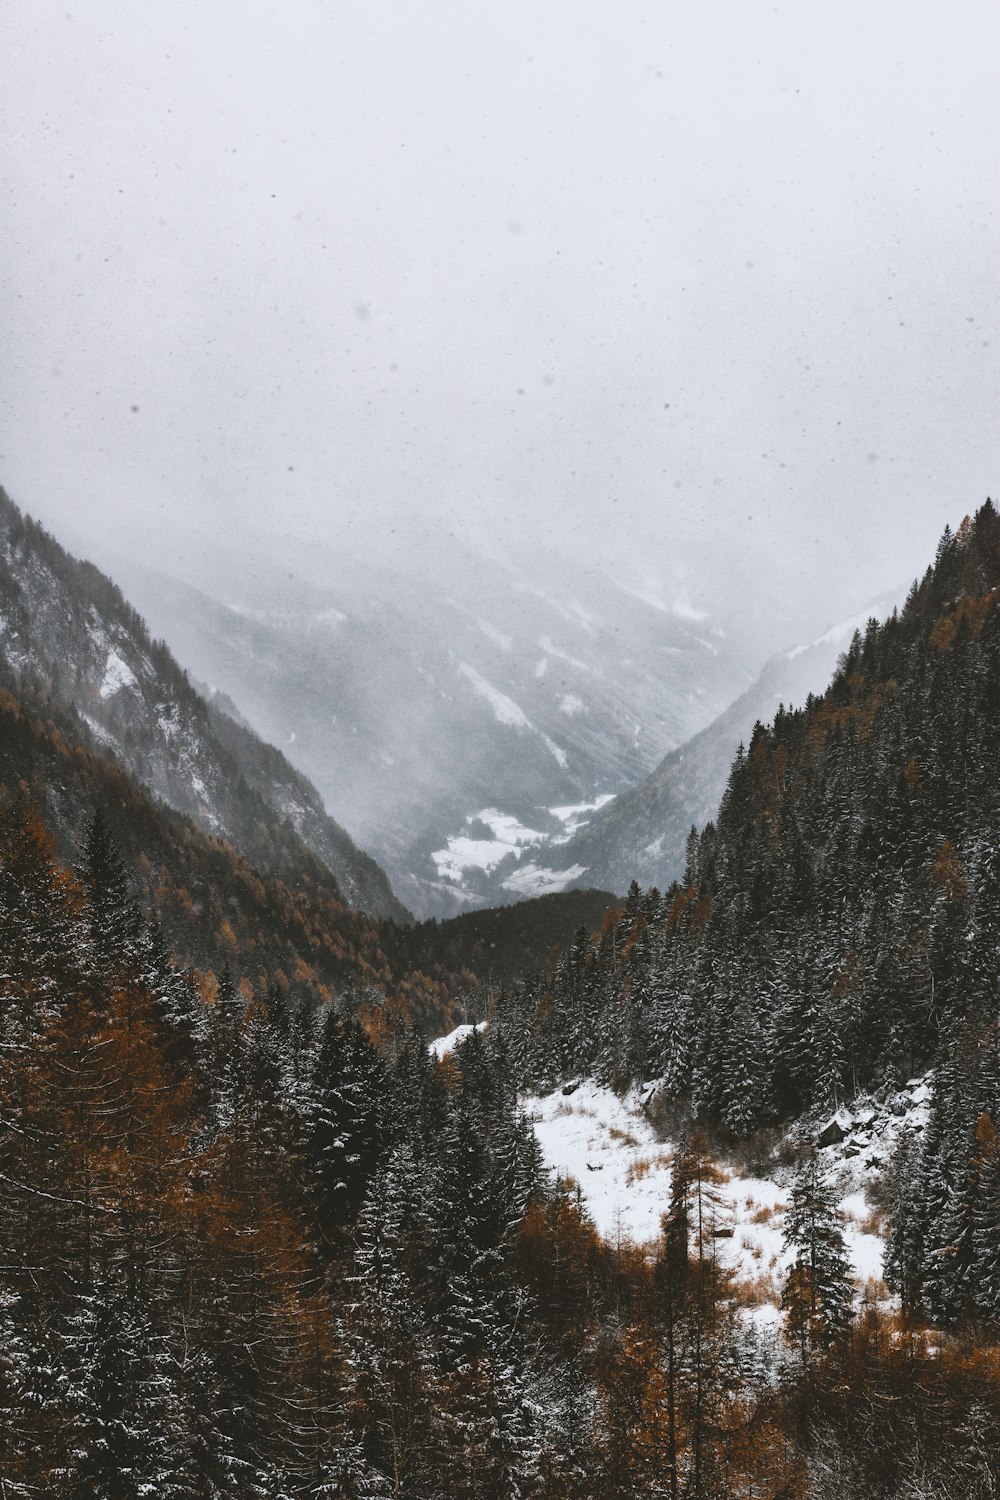 Landschaftsfotografie des verschneiten Berges unter nebligem Himmel